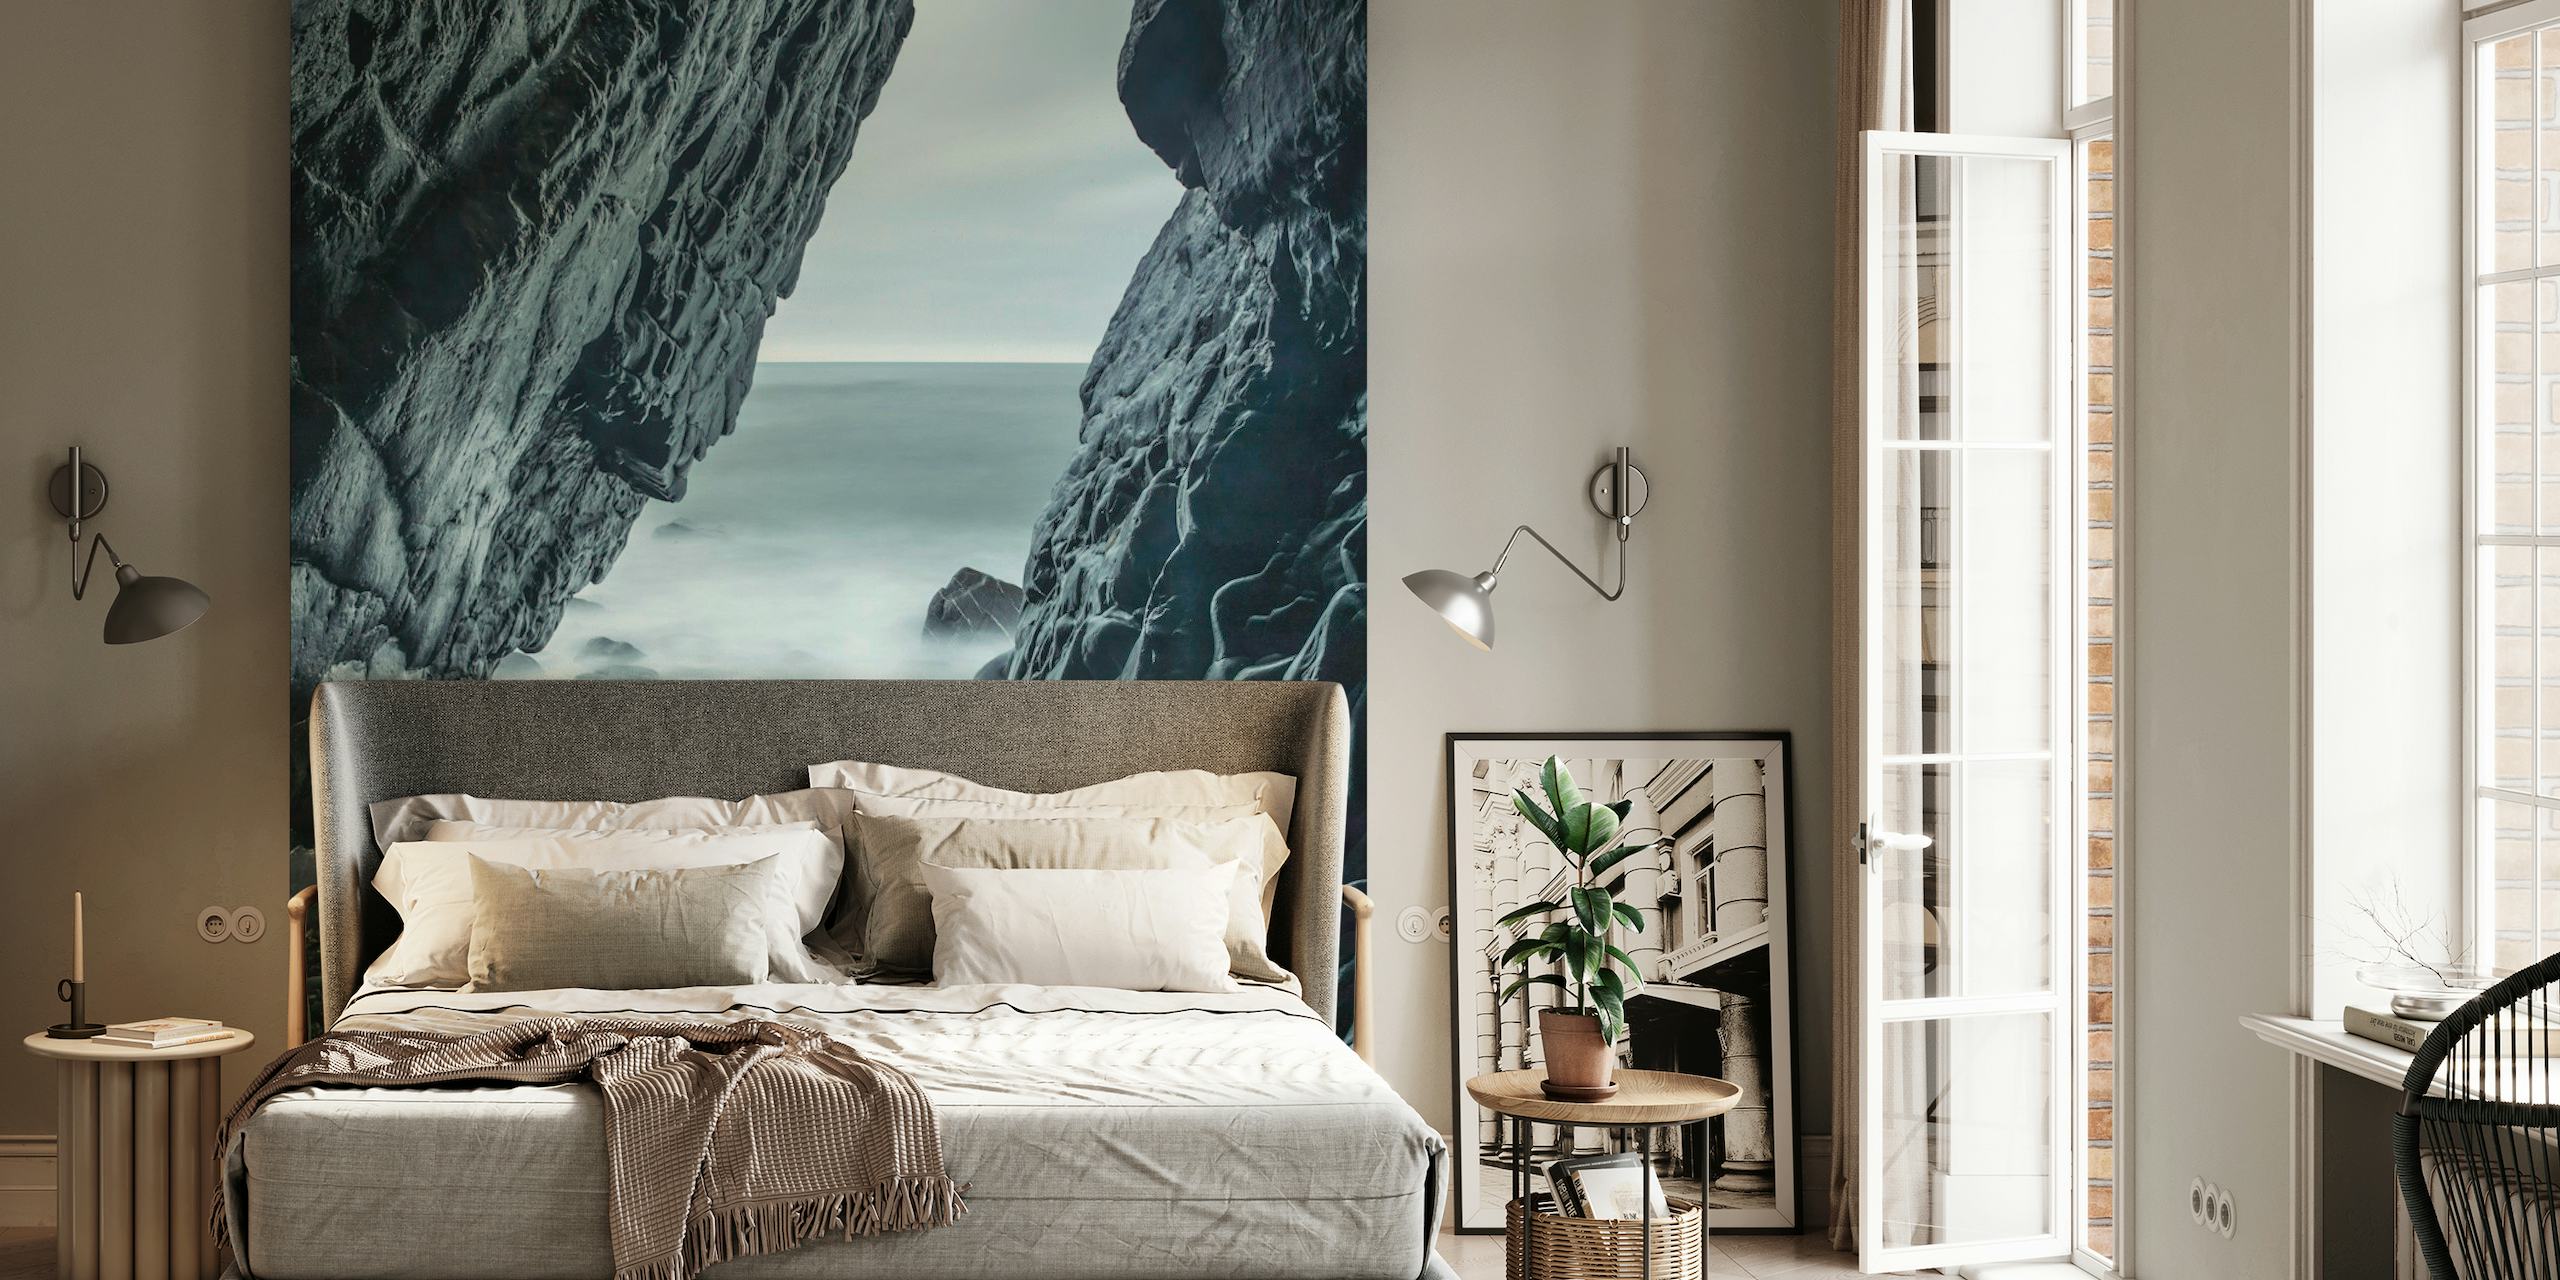 Zidna slika Nature's Sculpture koja prikazuje magloviti morski pejzaž s isklesanim stijenama